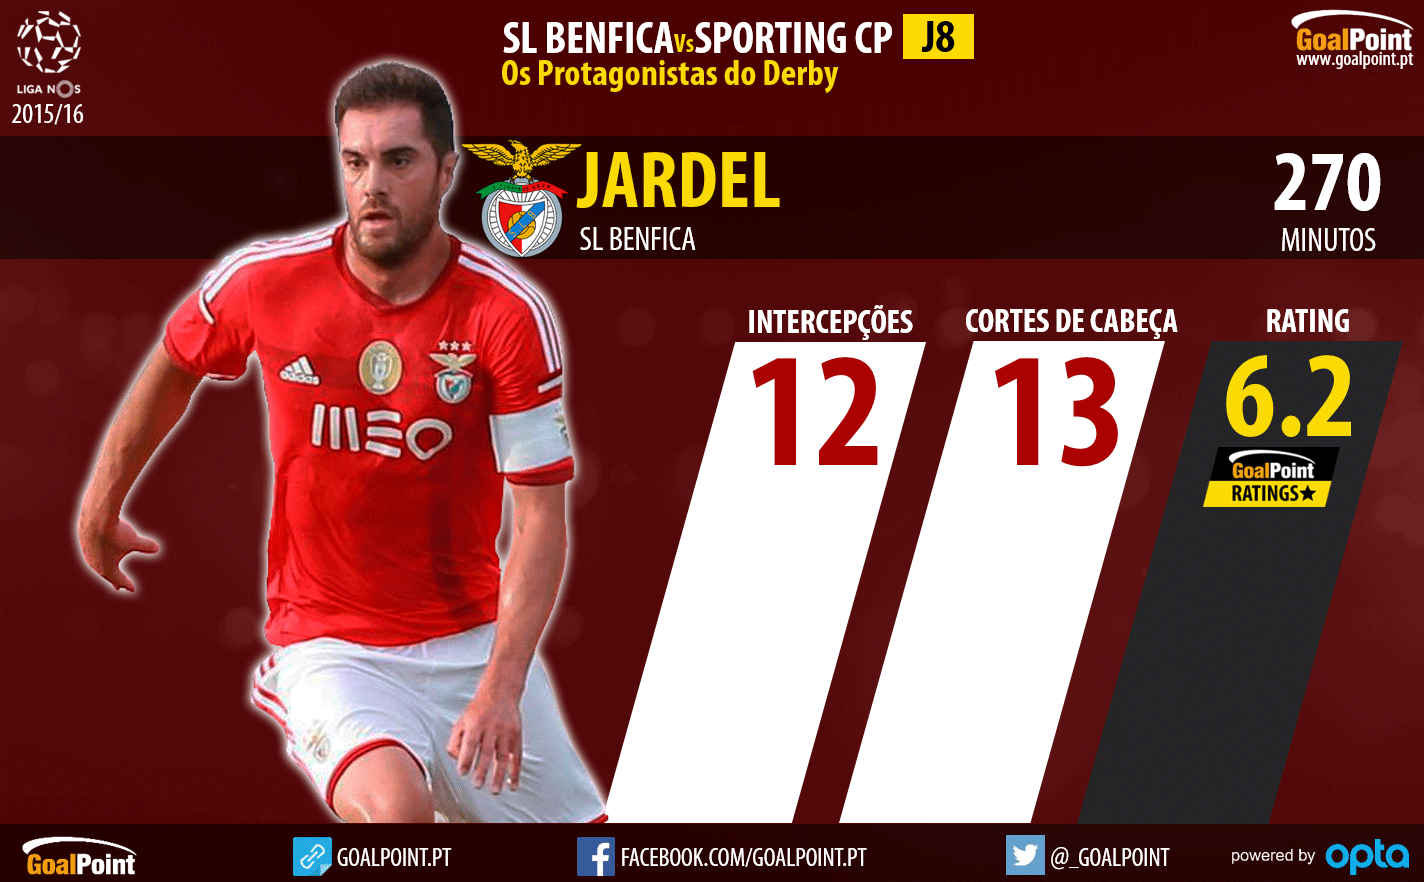 Benfica - Sporting Liga NOS 2015/16 - As figuras que podem fazer a diferença - Jardel